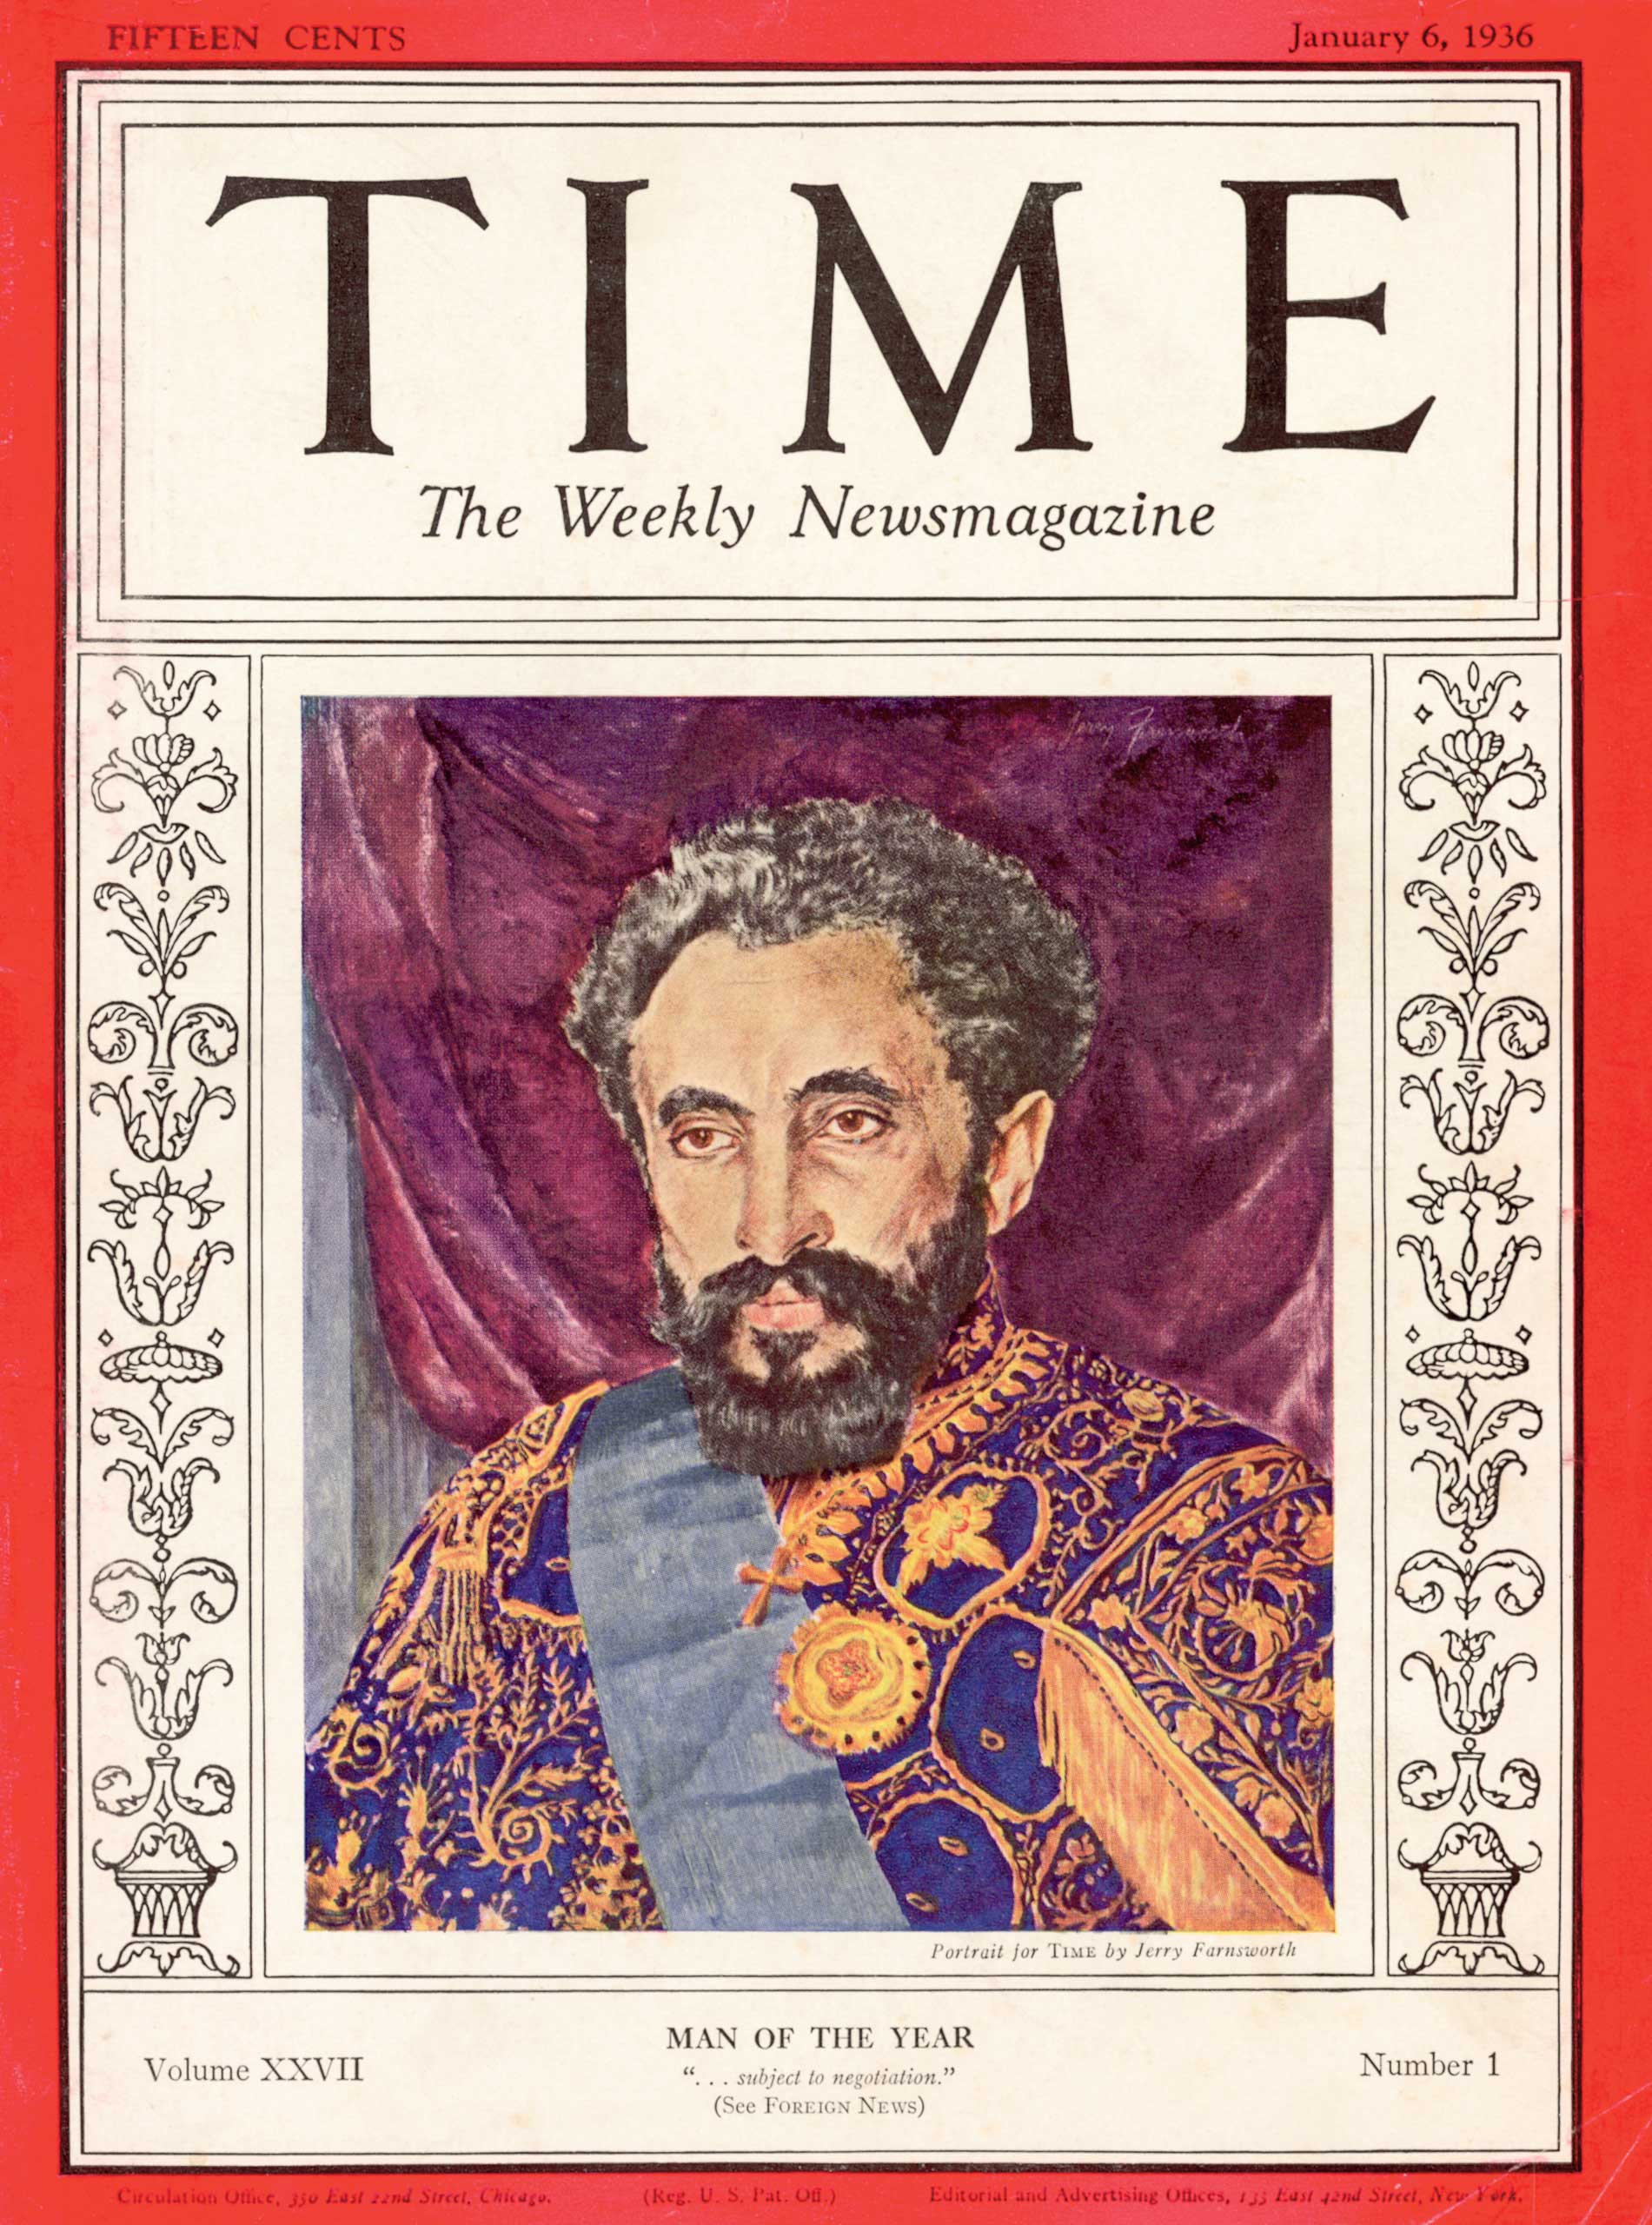 1935: Haile Selassie